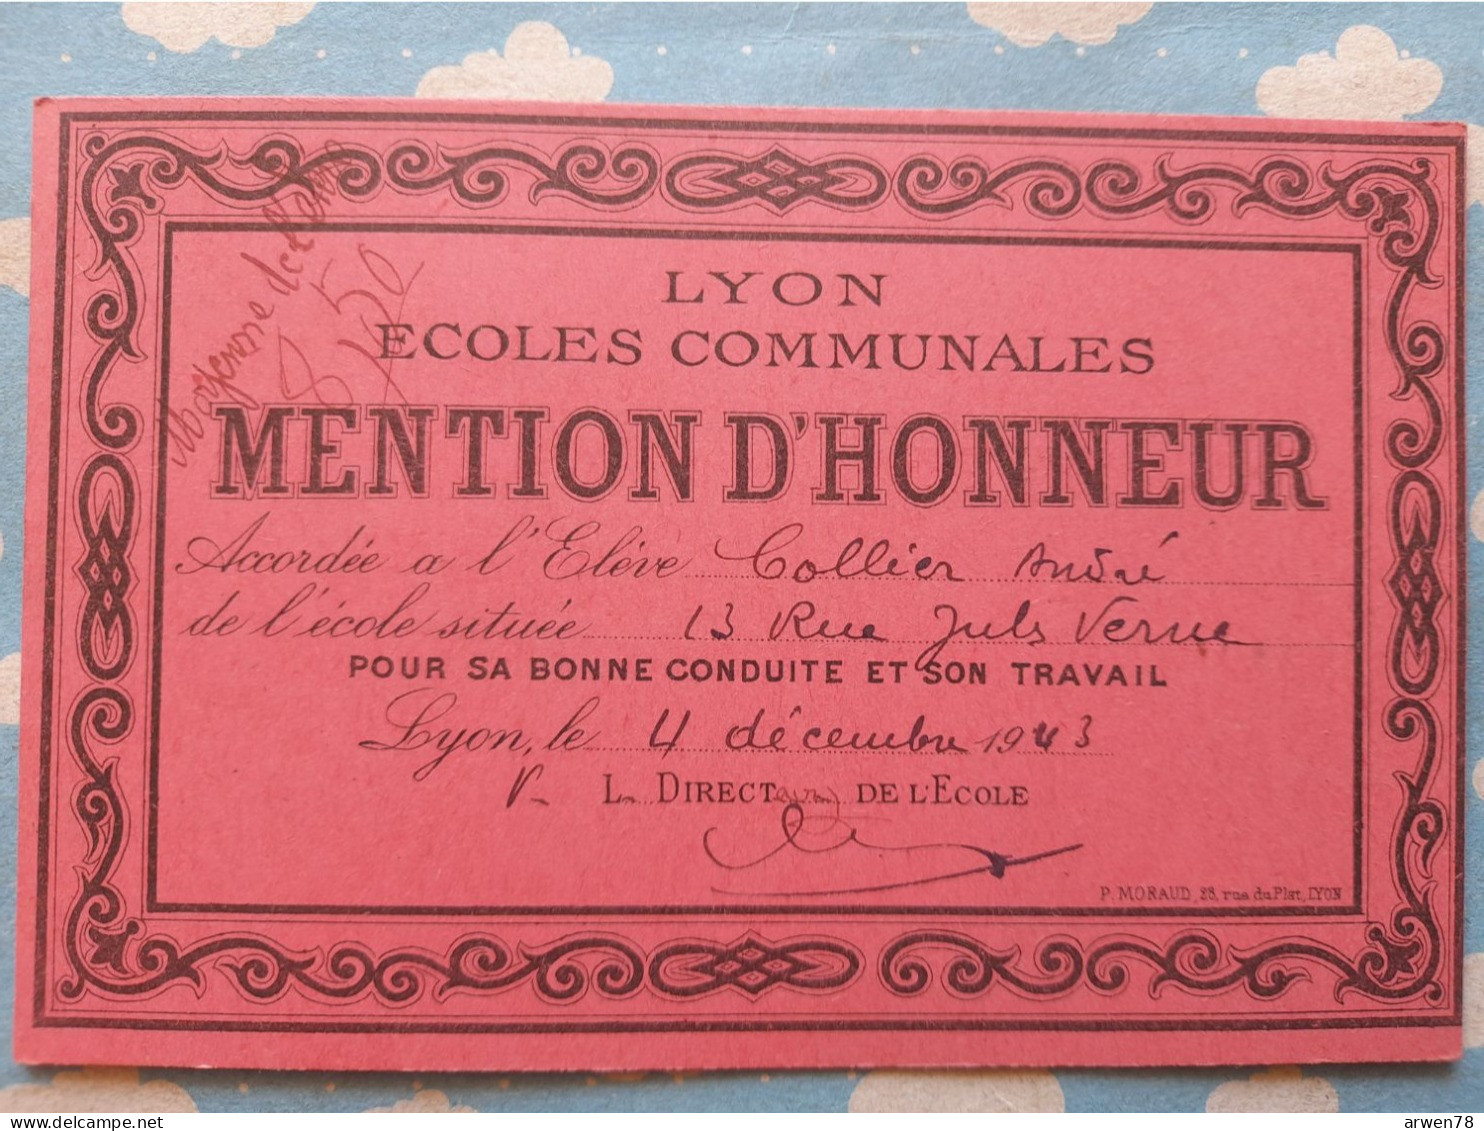 LYON écoles Communales BILLET MENTION D'HONNEUR 4 Decembre 1943 - Diplome Und Schulzeugnisse